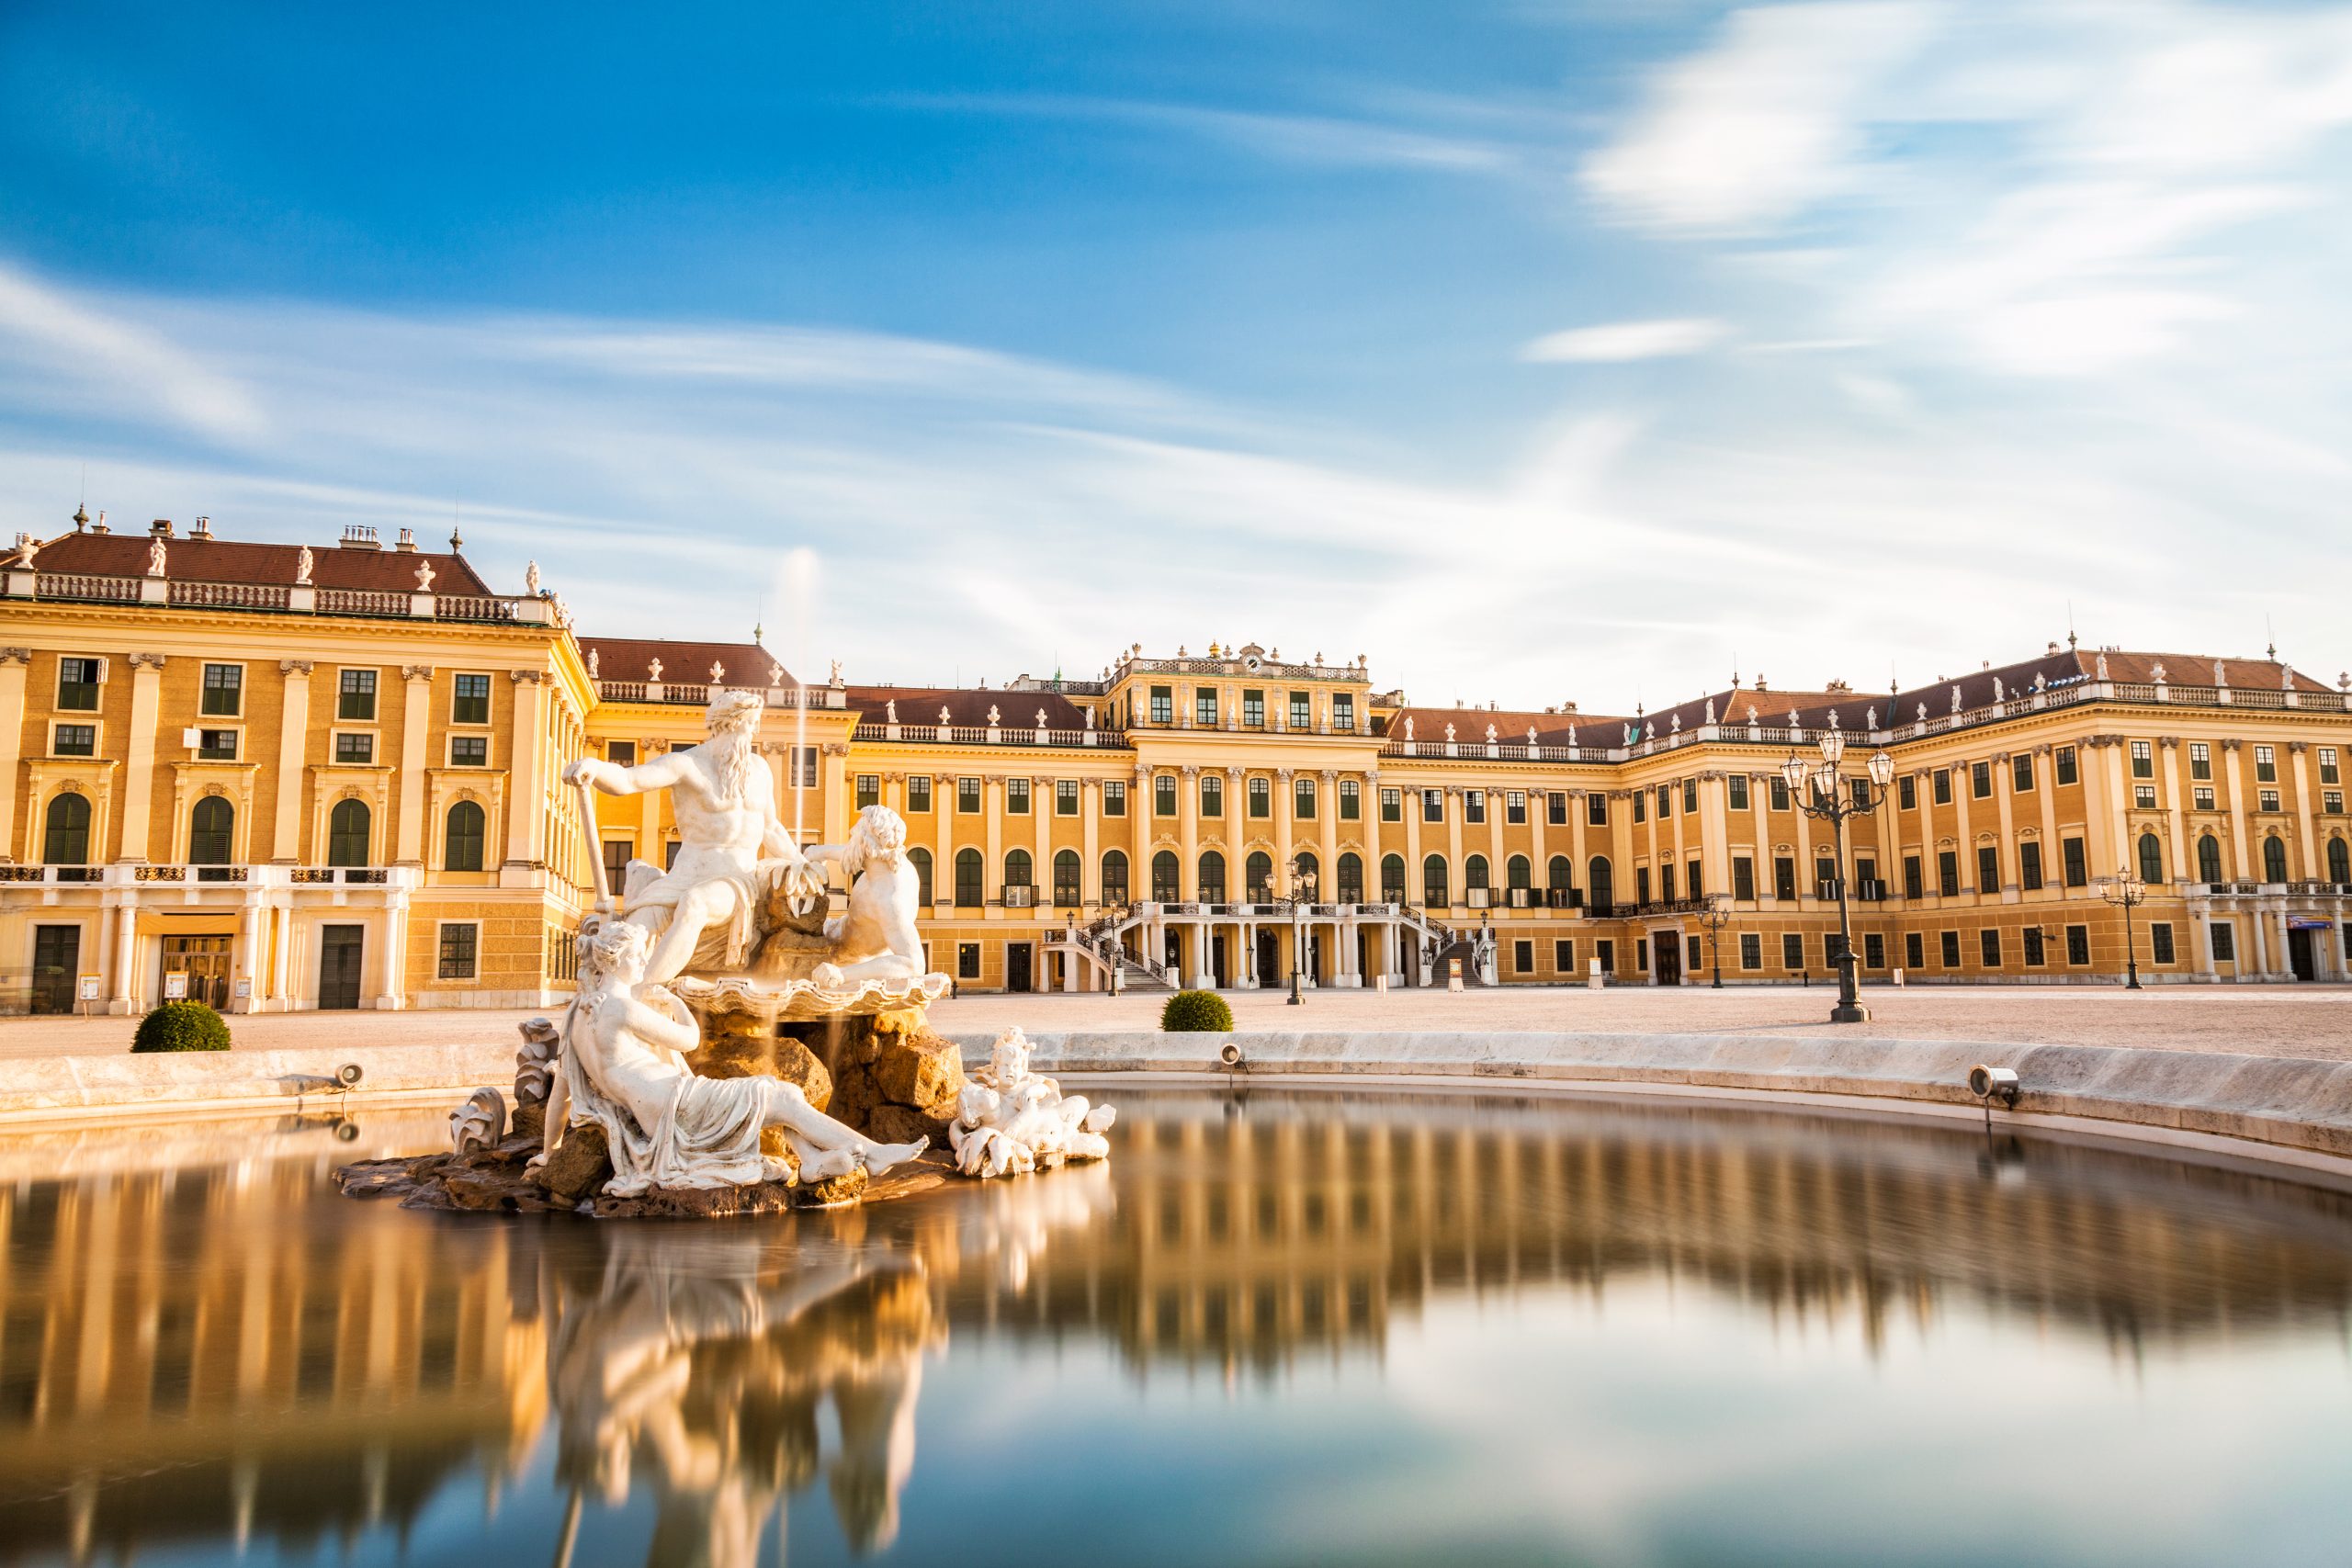 Schonbrunn Palace vs Belvedere Museum